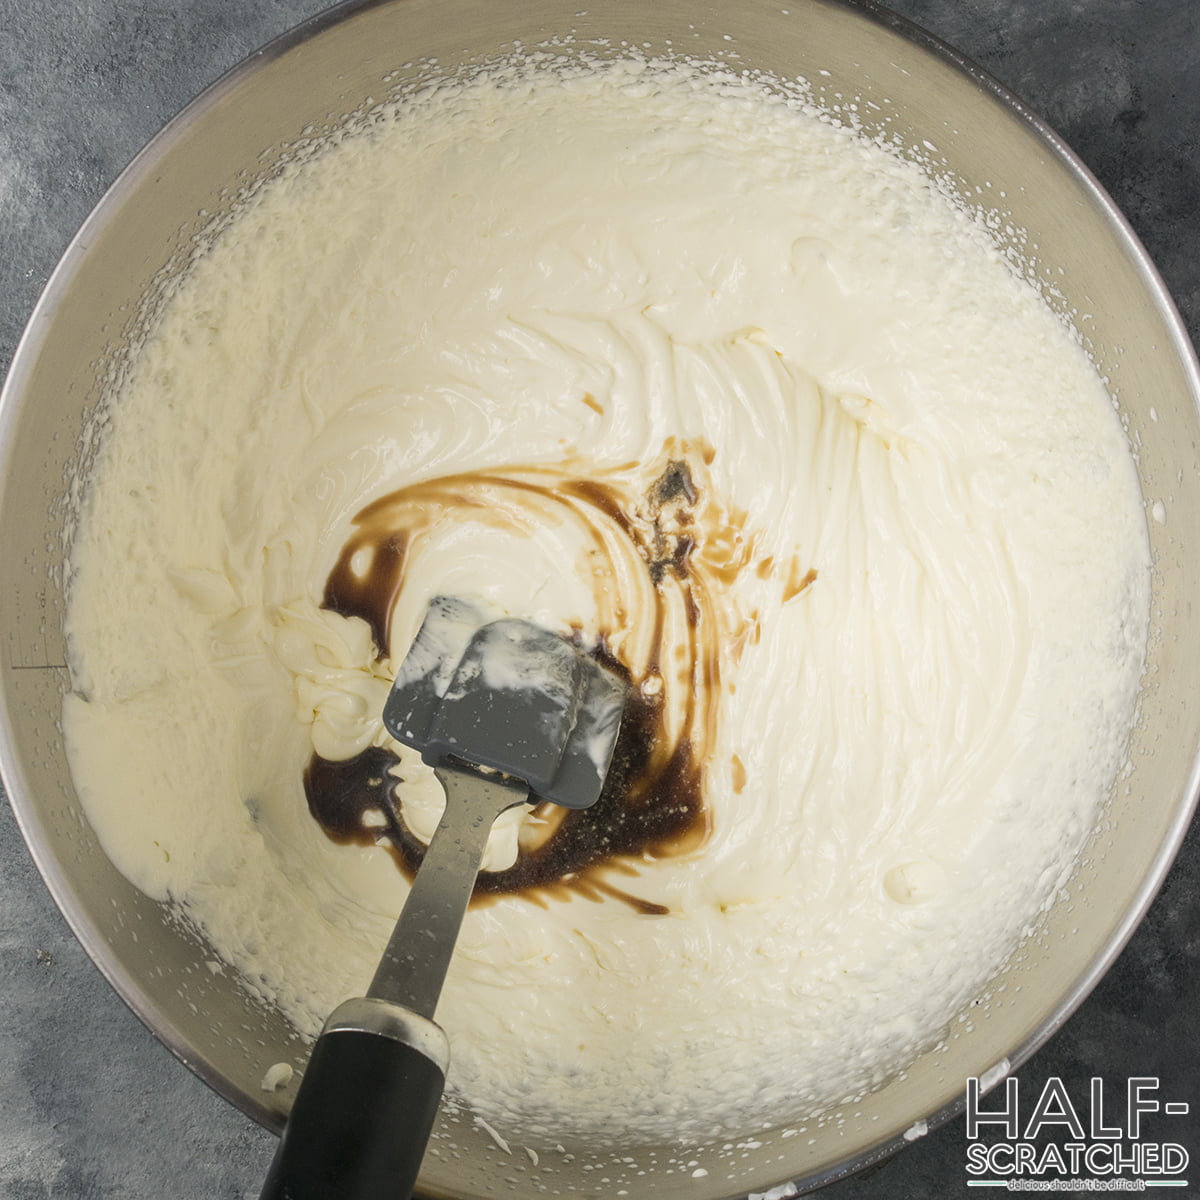 Adding vanilla 